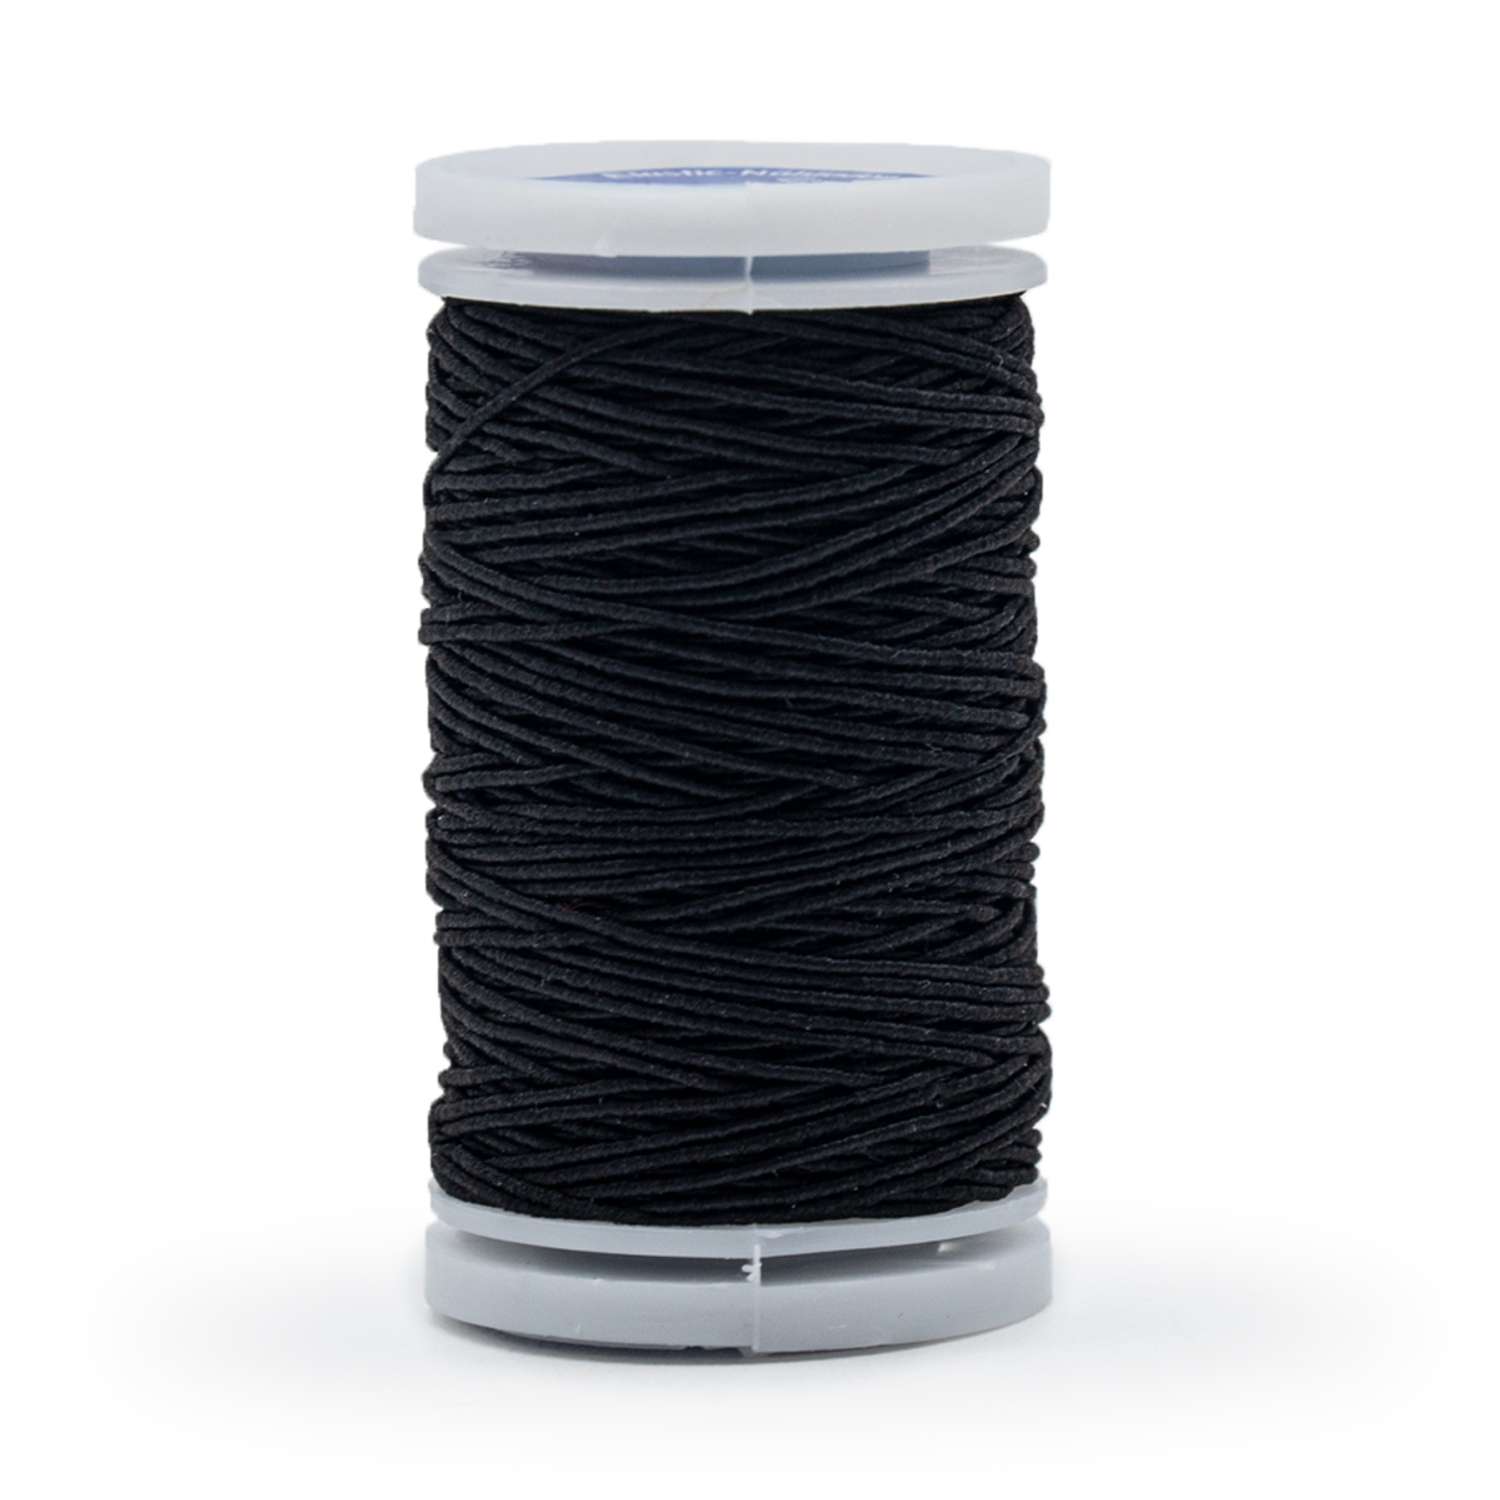 Нитки Prym эластичные для шитья вязания и рукоделия 0.5 мм Черный 1 шт 970010 - фото 1